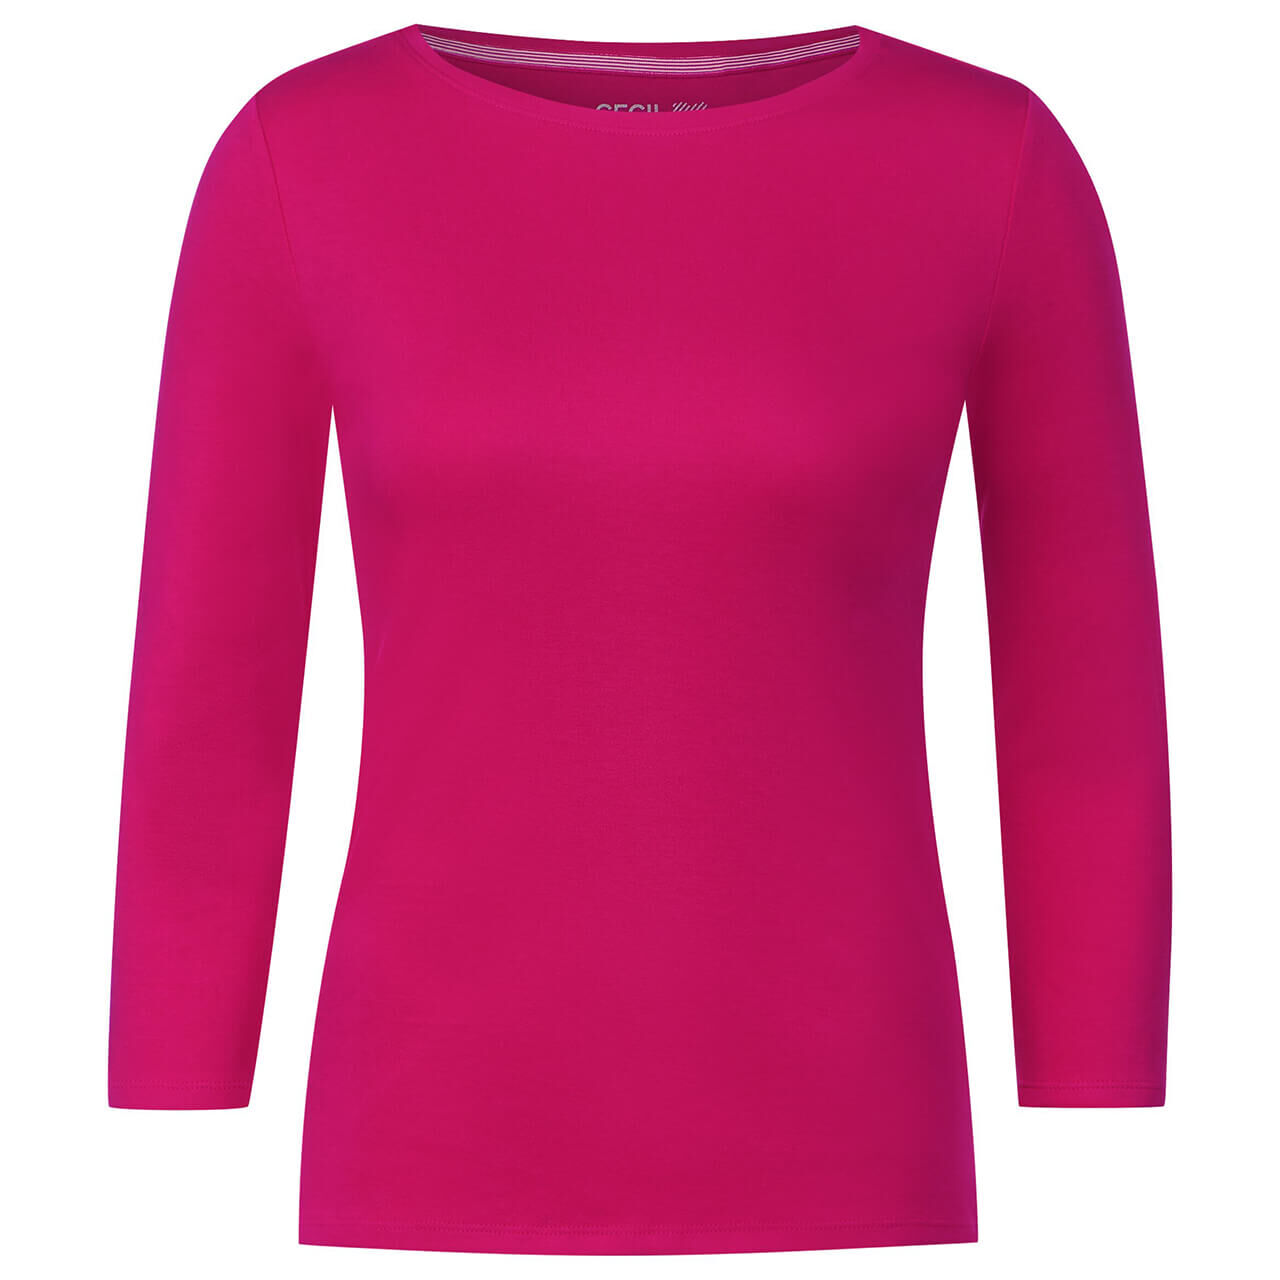 Cecil Damen 3/4 Arm Shirt Basic Boatneck pink sorbet